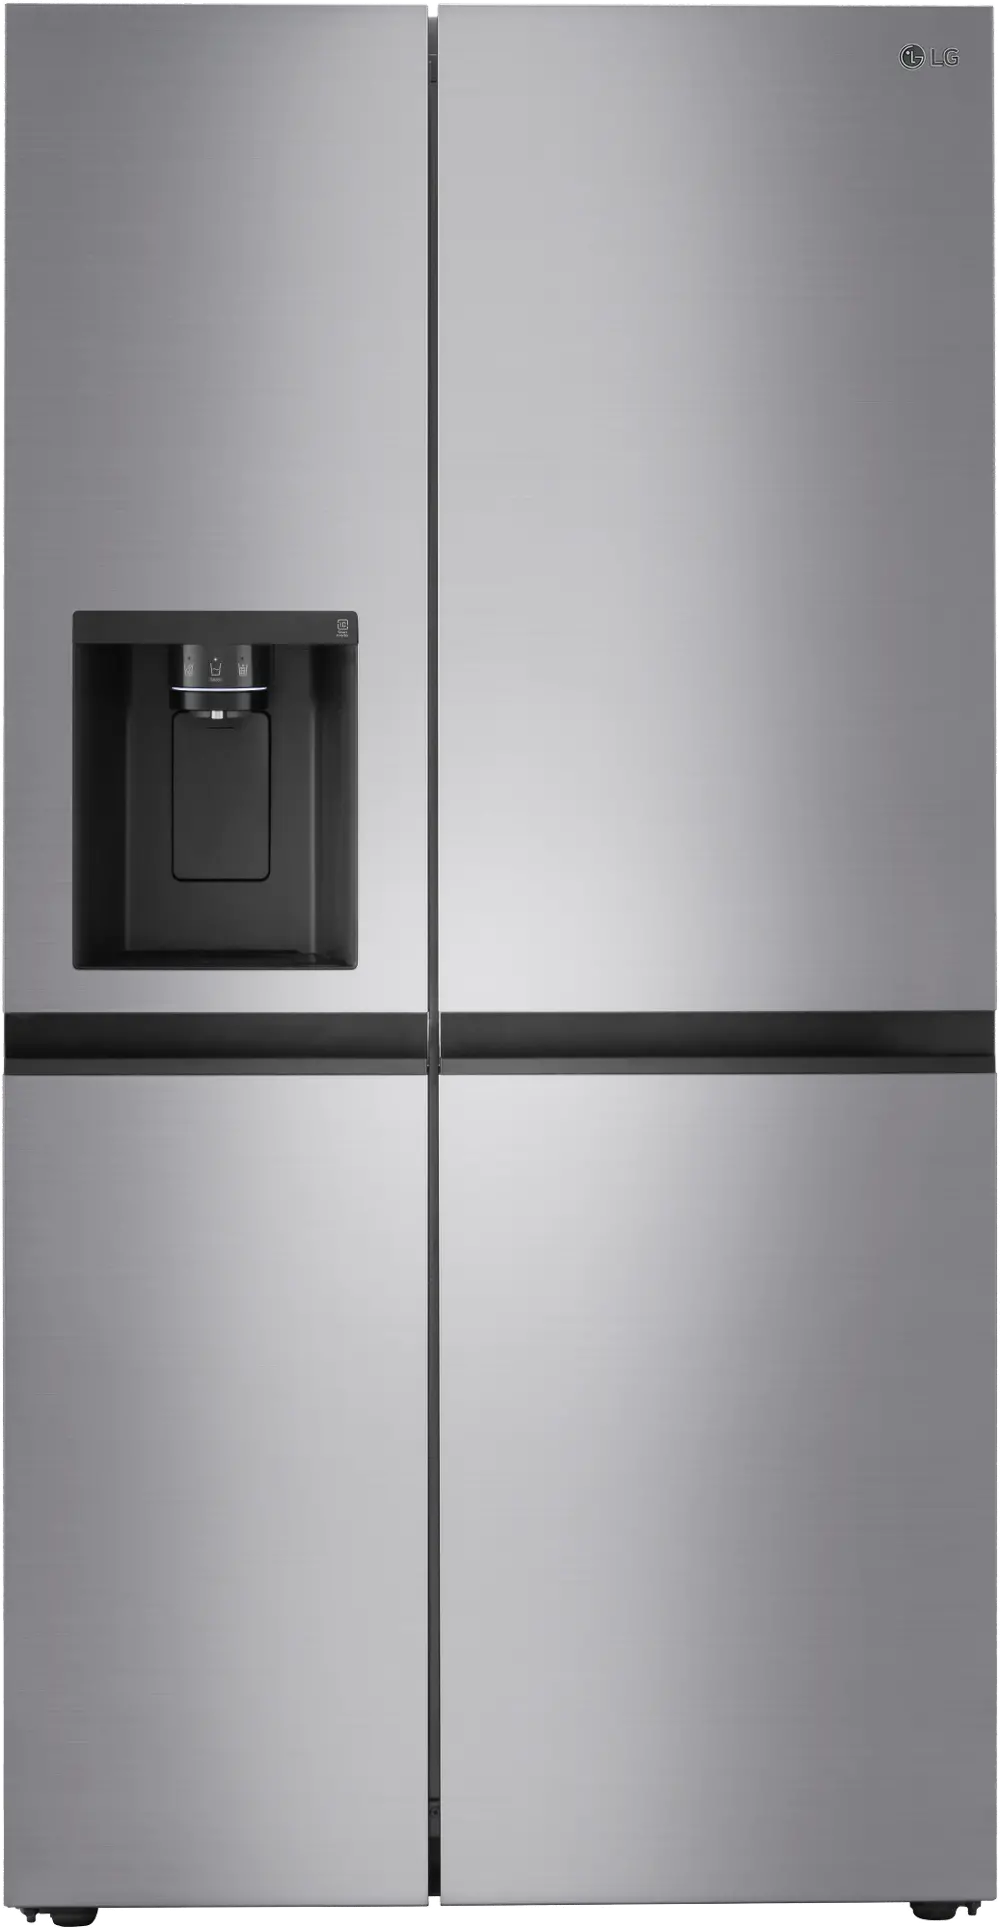 LRSXC2306V LG 23 cu ft Side by Side Refrigerator - Counter Depth Platinum Silver-1